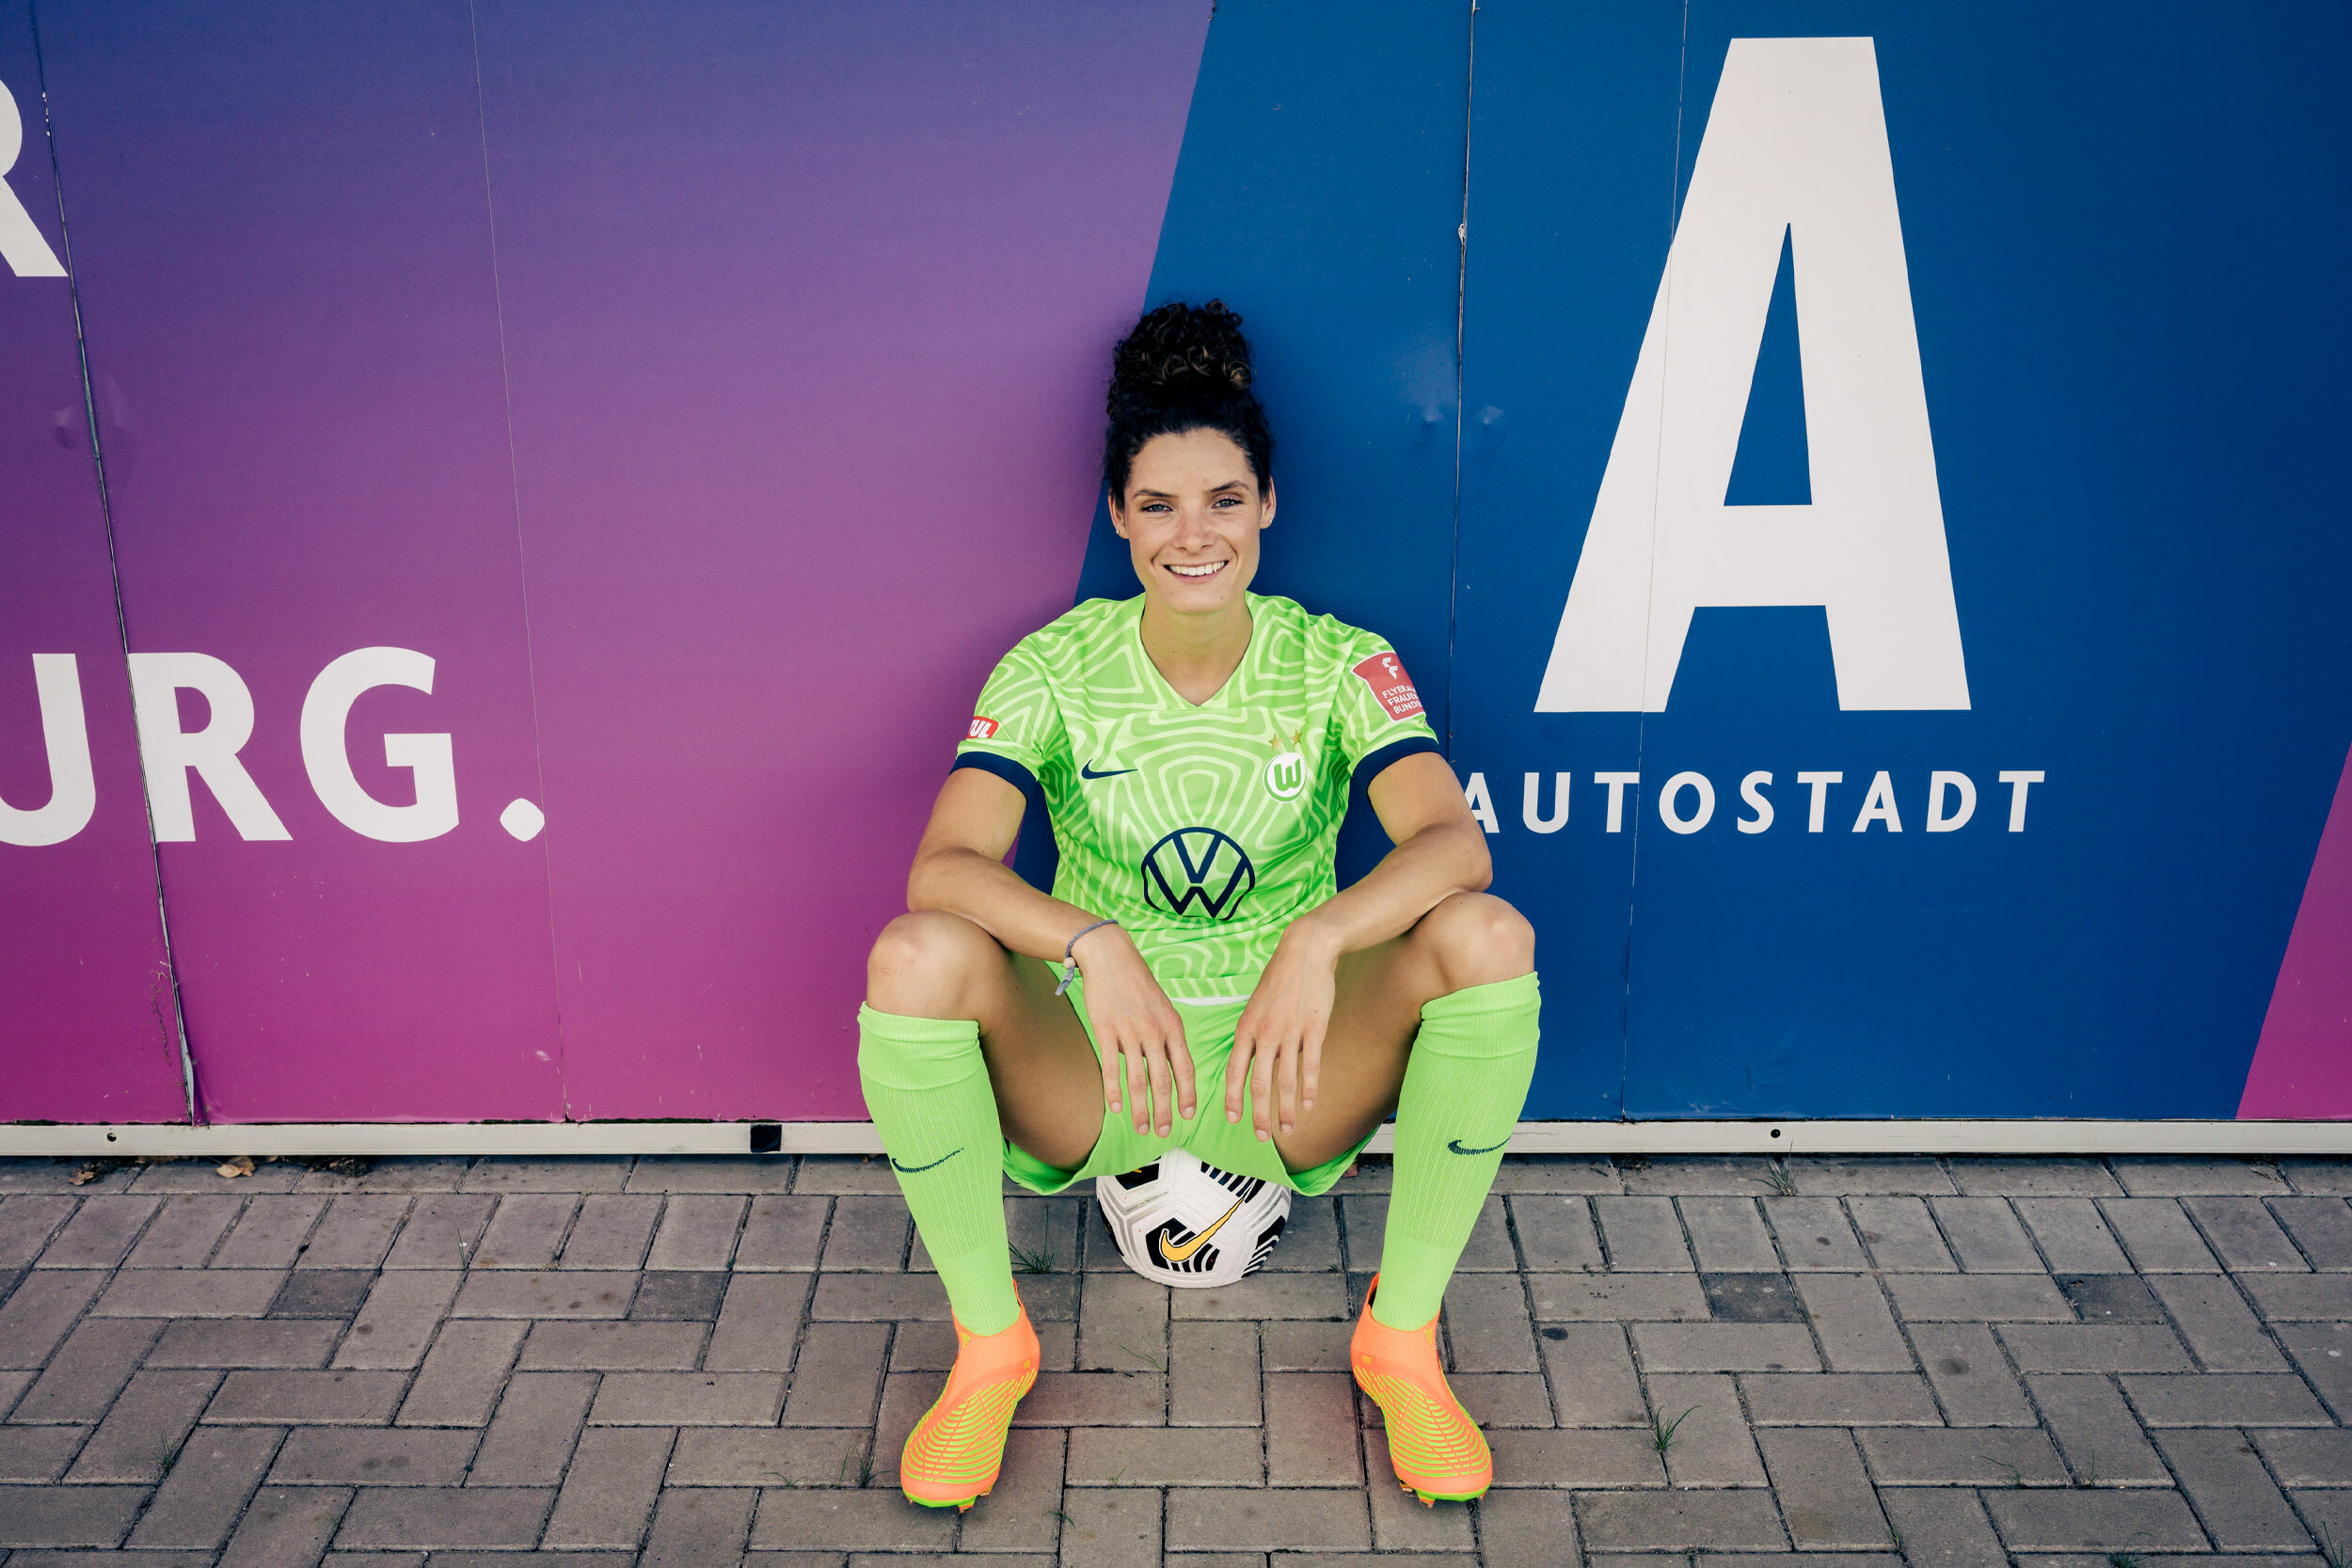 Foto von Dominique Janssen. Die Fußballerin sitzt auf einem Fußball an eine Wand gelehnt, lächelt in die Kamera. Auf der Wand steht Autostadt.